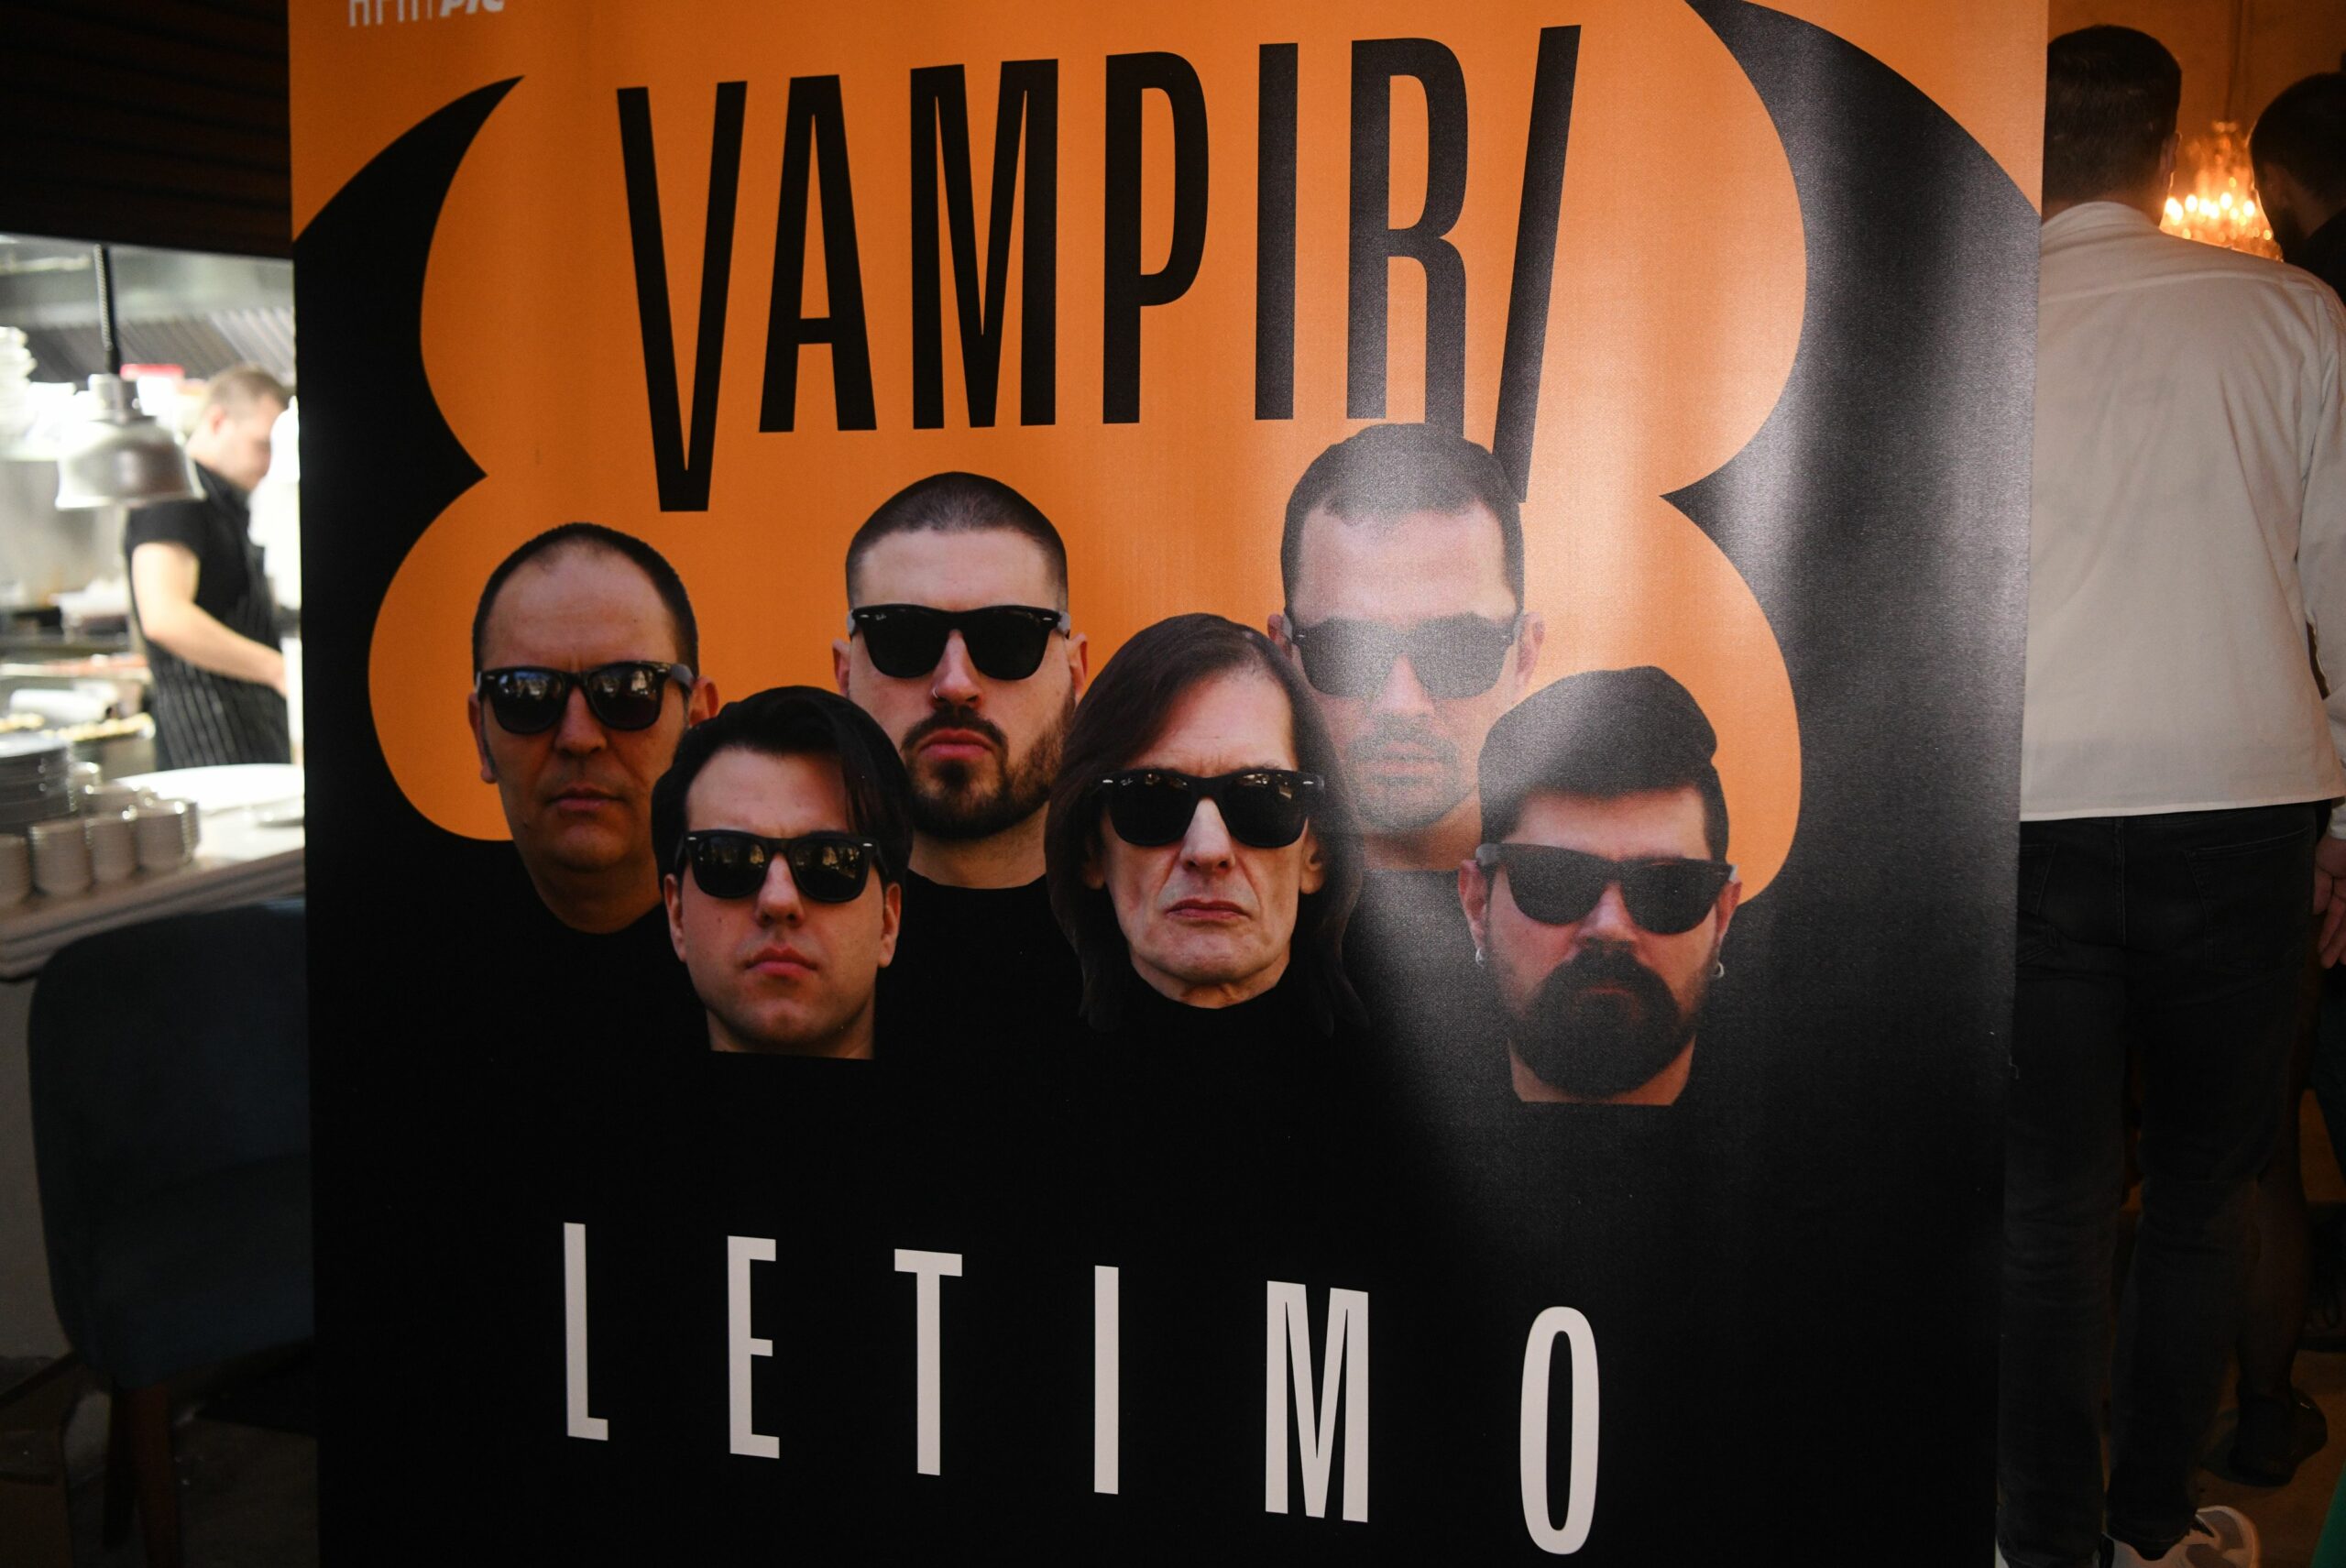 Povodom 30 godina od albuma “Be-be” , grupa Vampiri održaće koncert u Nišu 8. aprila